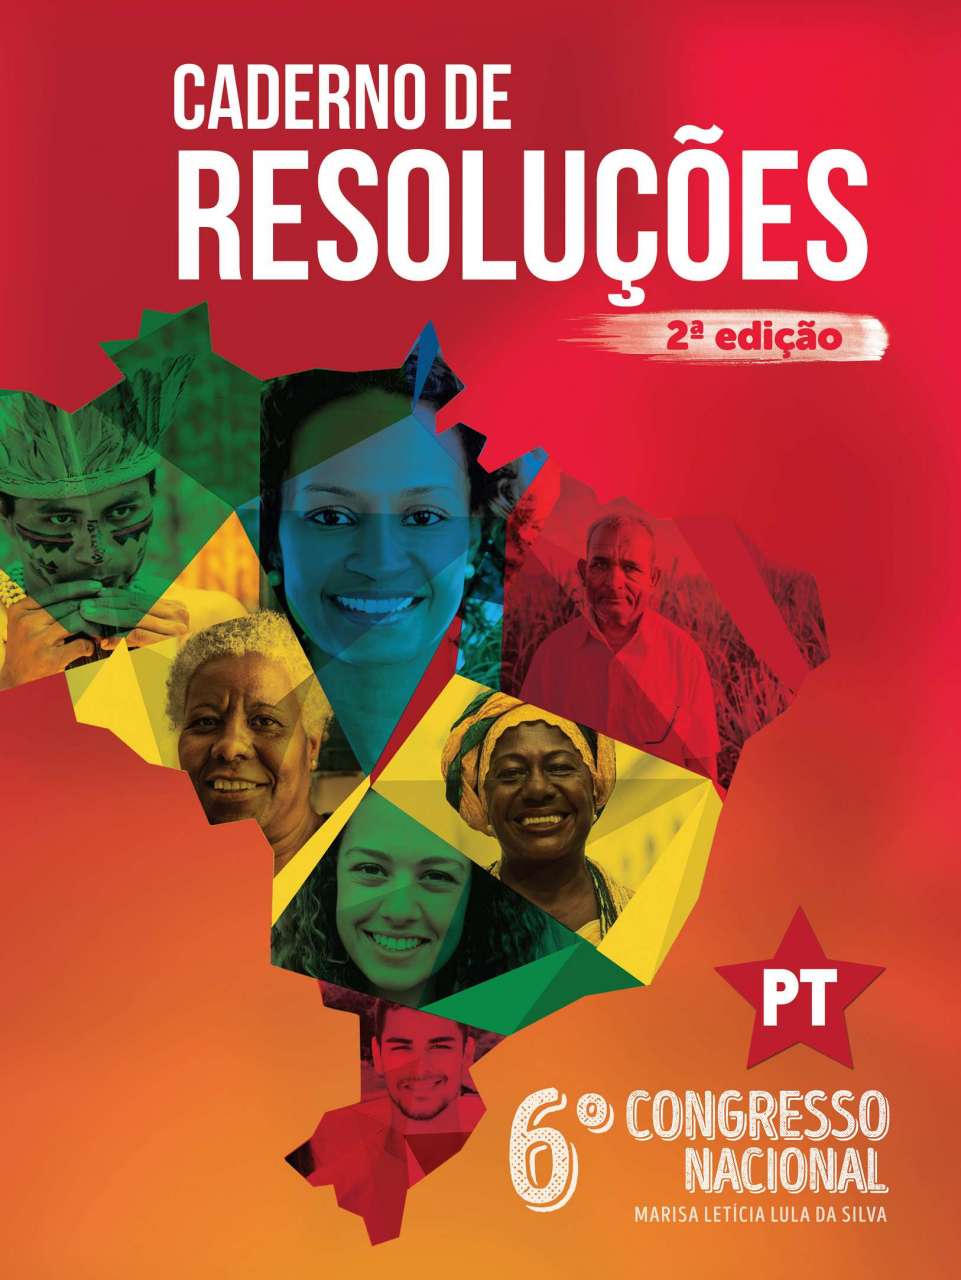 PT divulga 2ª edição das resoluções do 6º Congresso Nacional